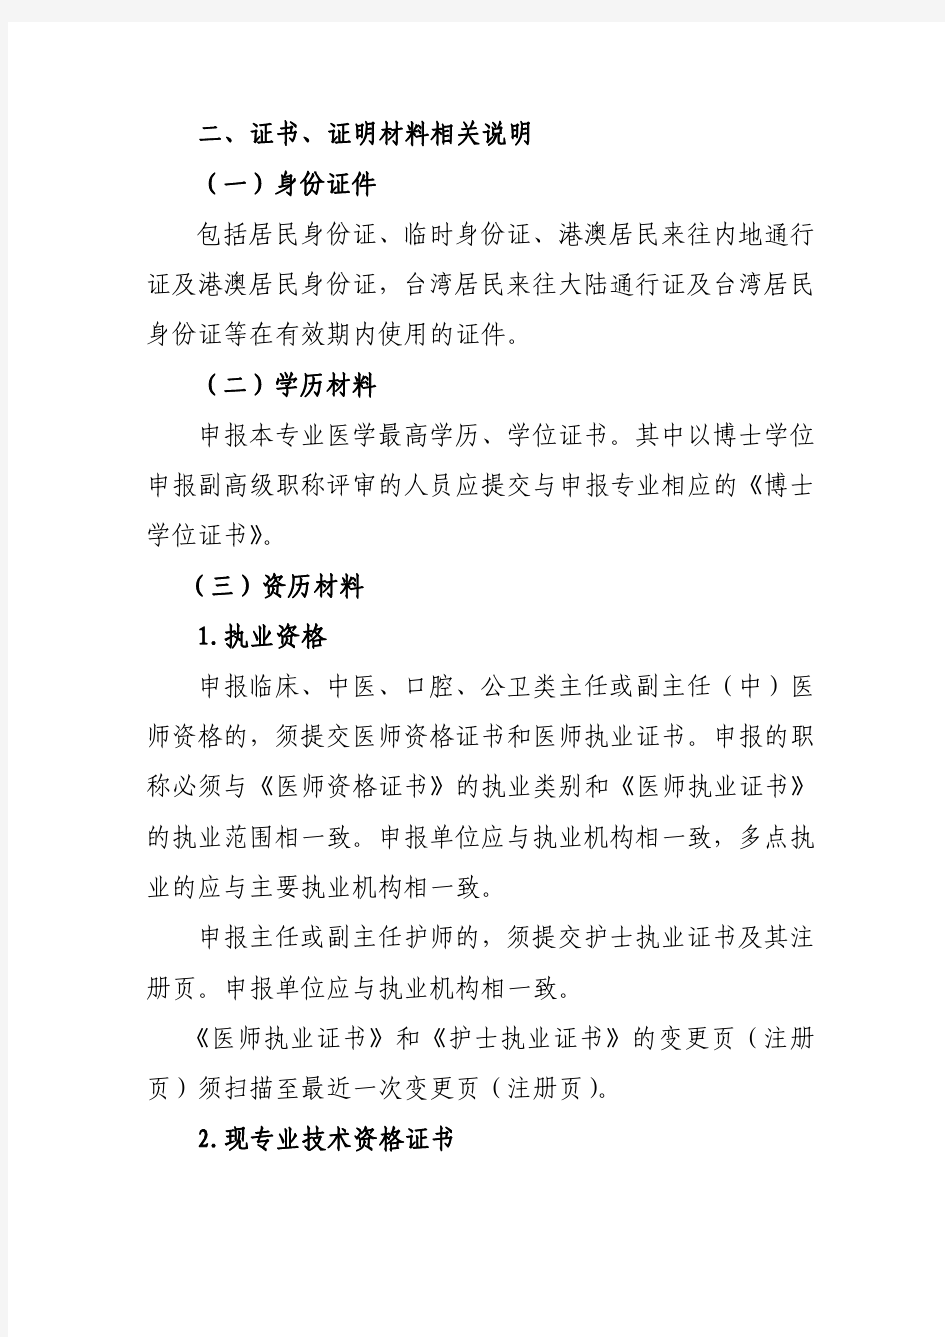 广东卫生系列高级职称评审申报人员须知2018年版